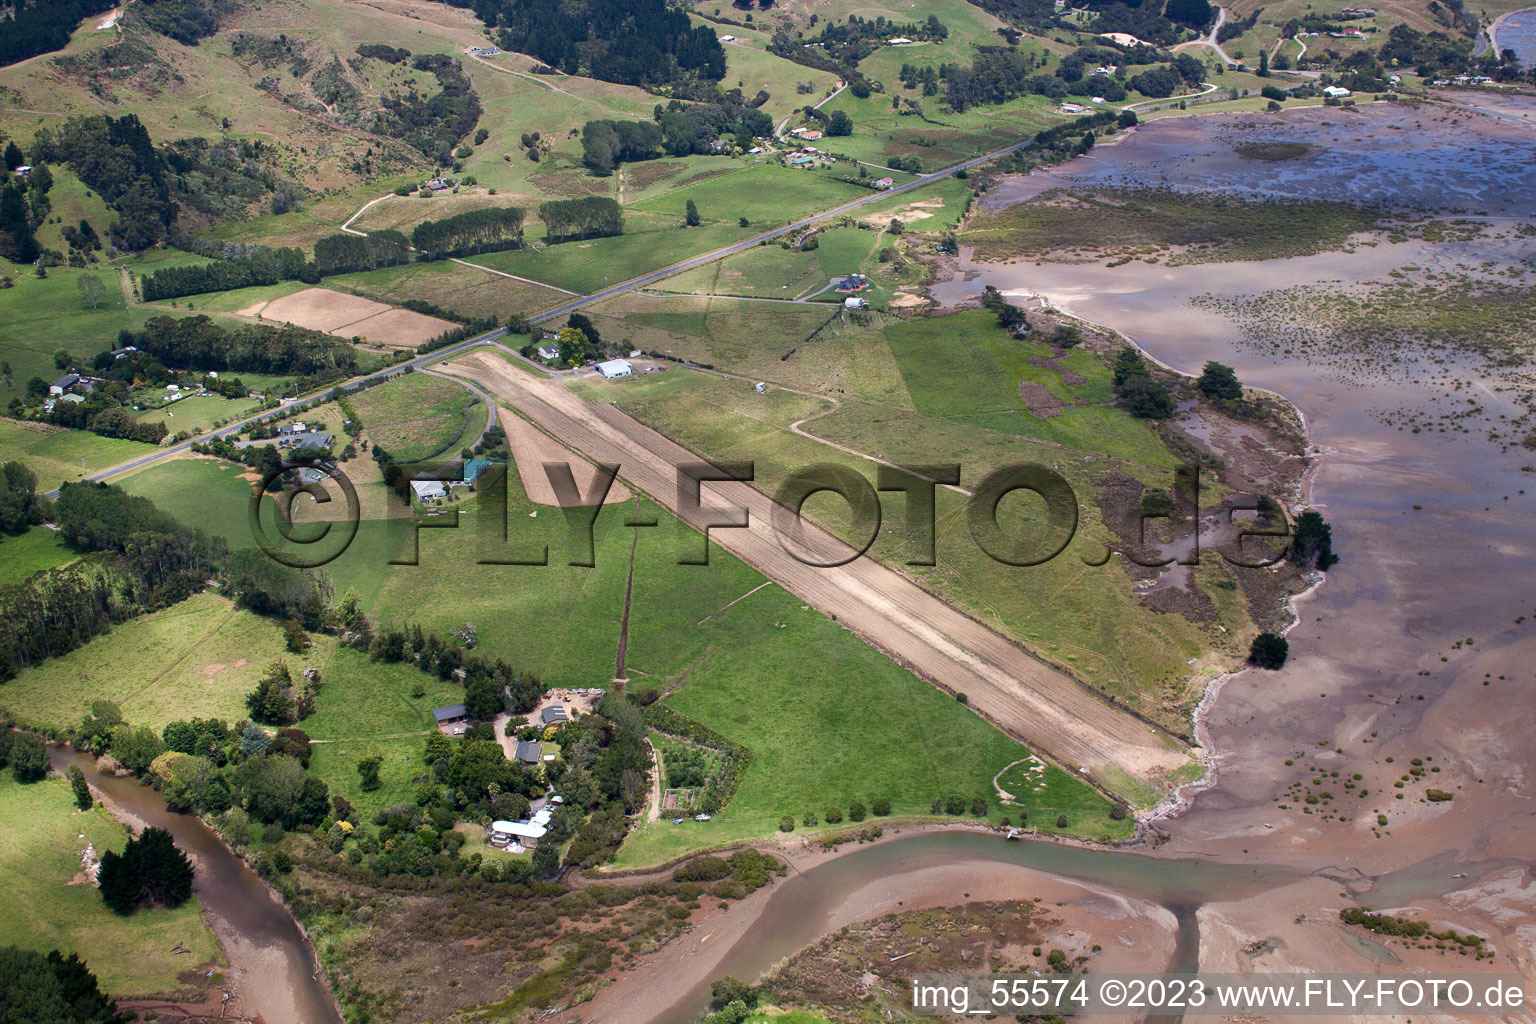 Vue oblique de Coromandel dans le département Waïkato, Nouvelle-Zélande